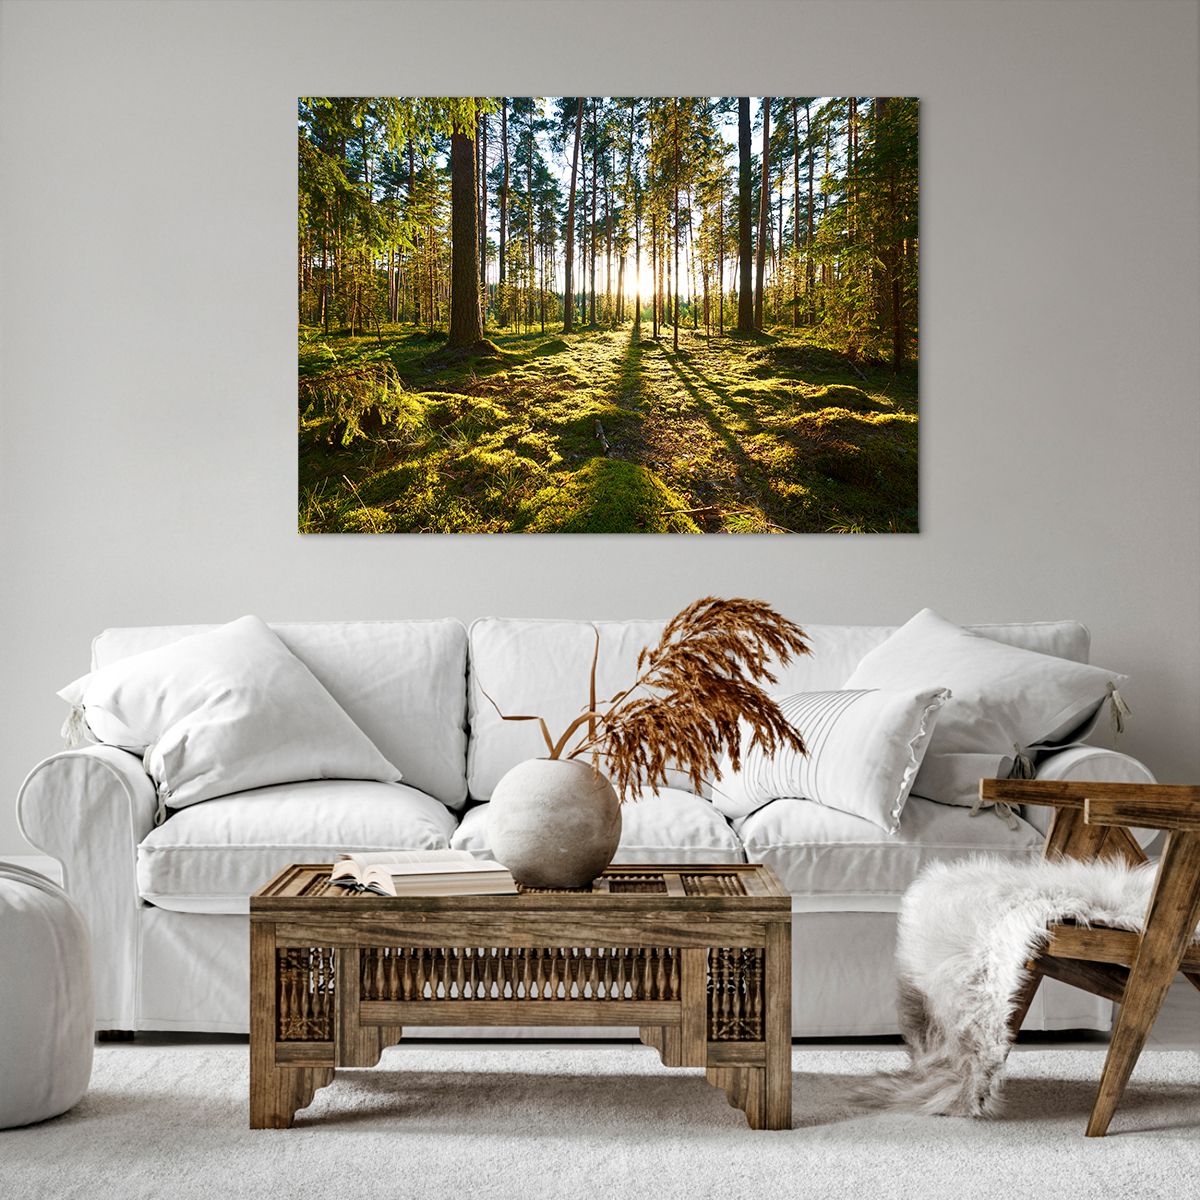 Bild auf Leinwand Landschaft, Bild auf Leinwand Wald, Bild auf Leinwand Natur, Bild auf Leinwand Sonnenstrahlen, Bild auf Leinwand Bäume